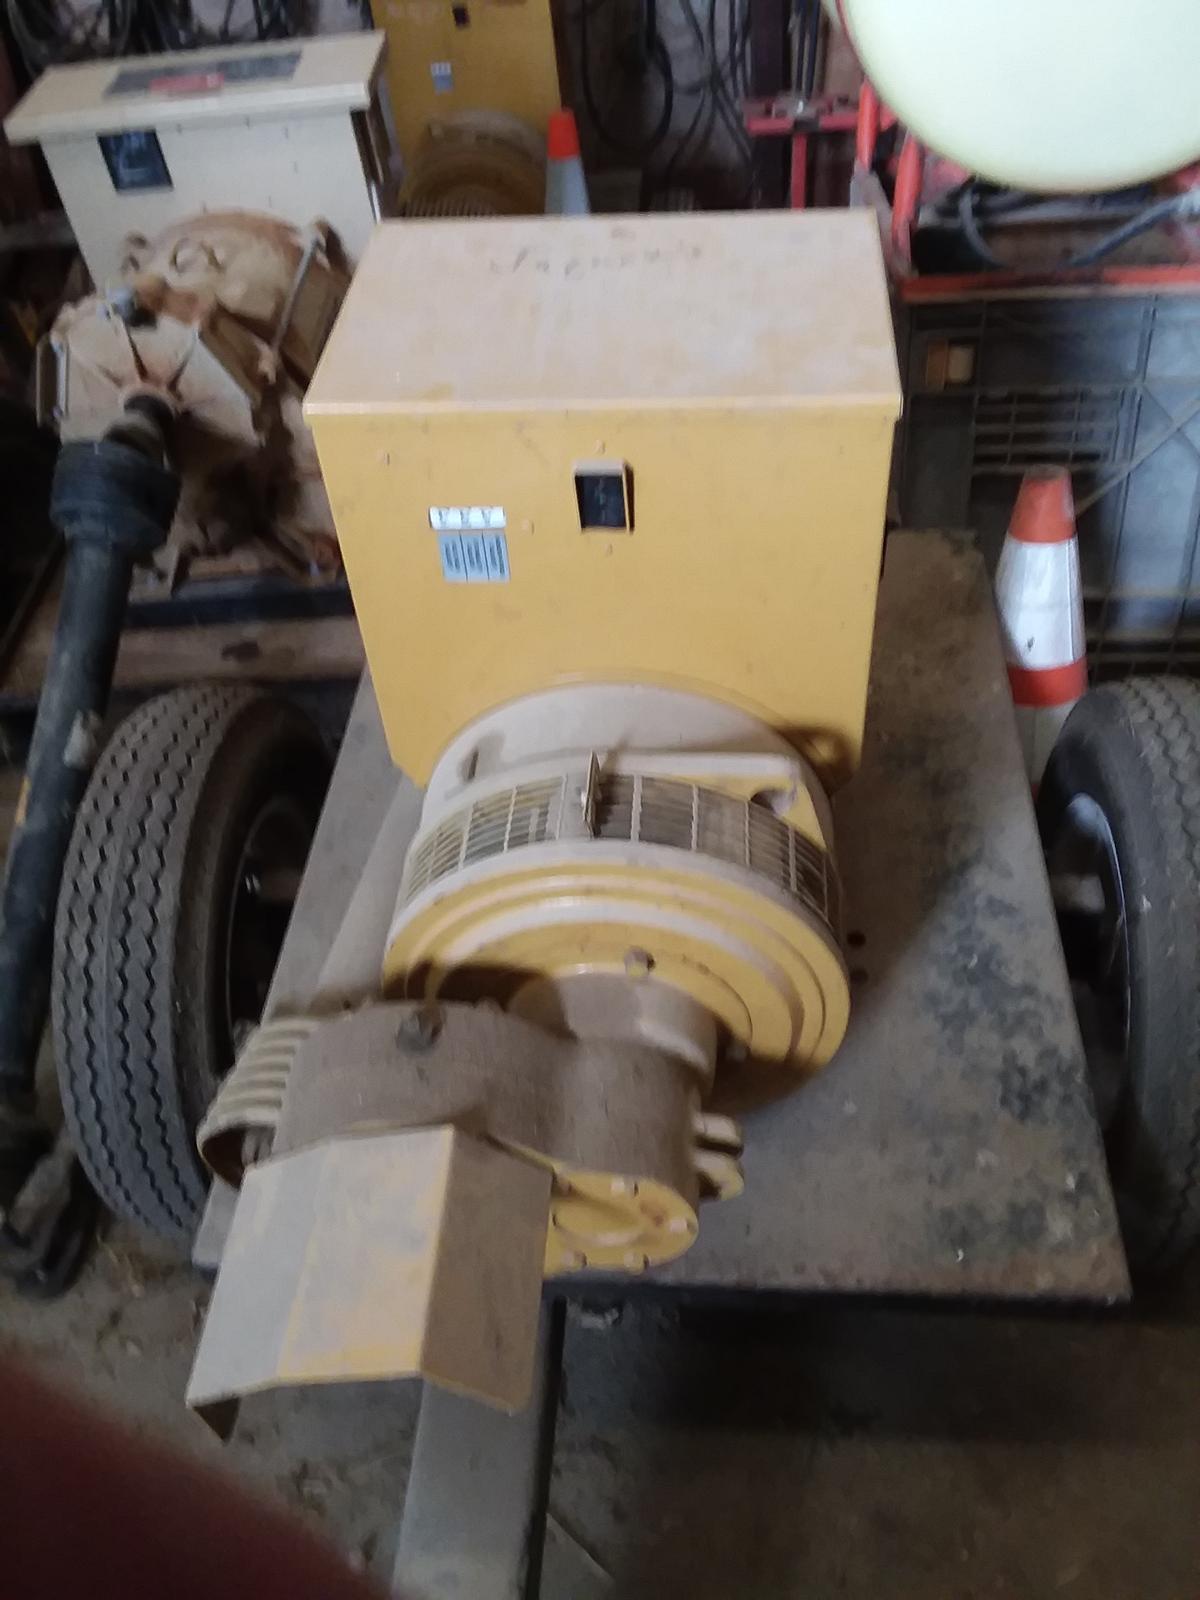 Katolight 25 KW (540) pto generator on cart